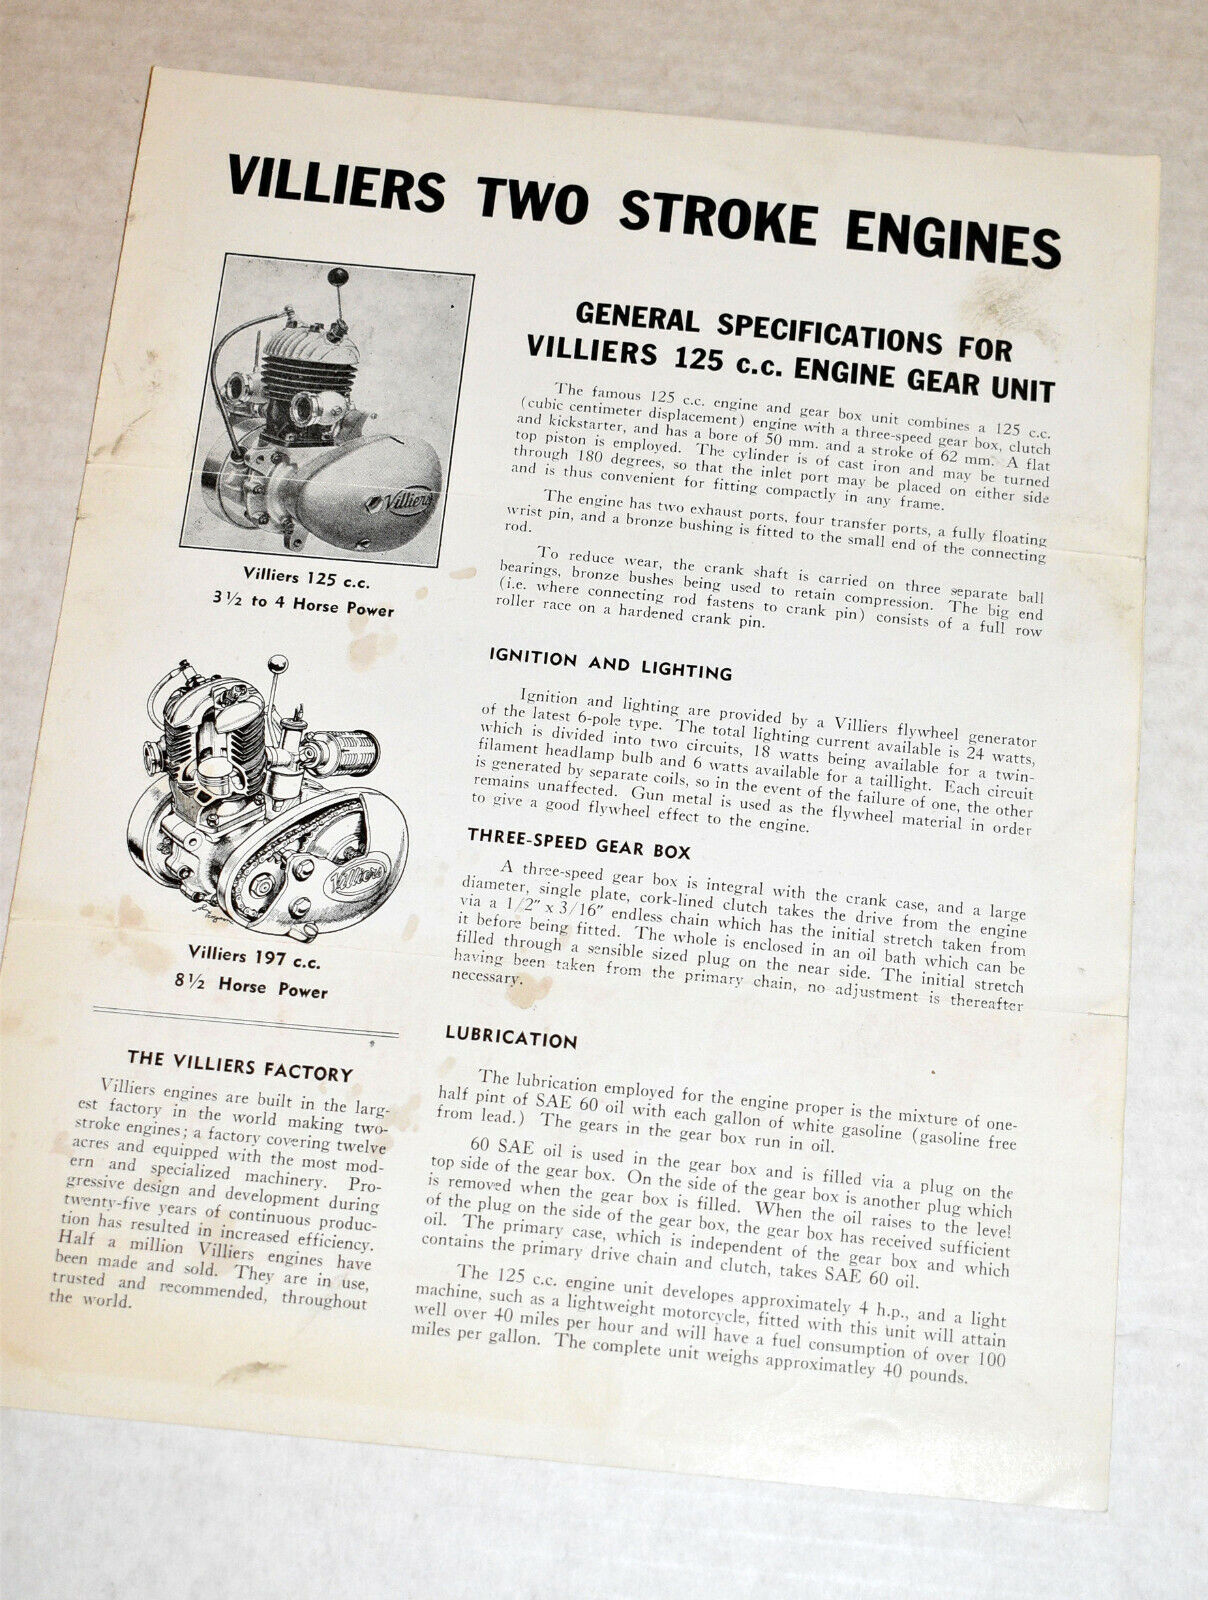 Villiers Two Stroke Engines 1950s U.S. Brochure~Villiers 125cc & Villiers 197cc